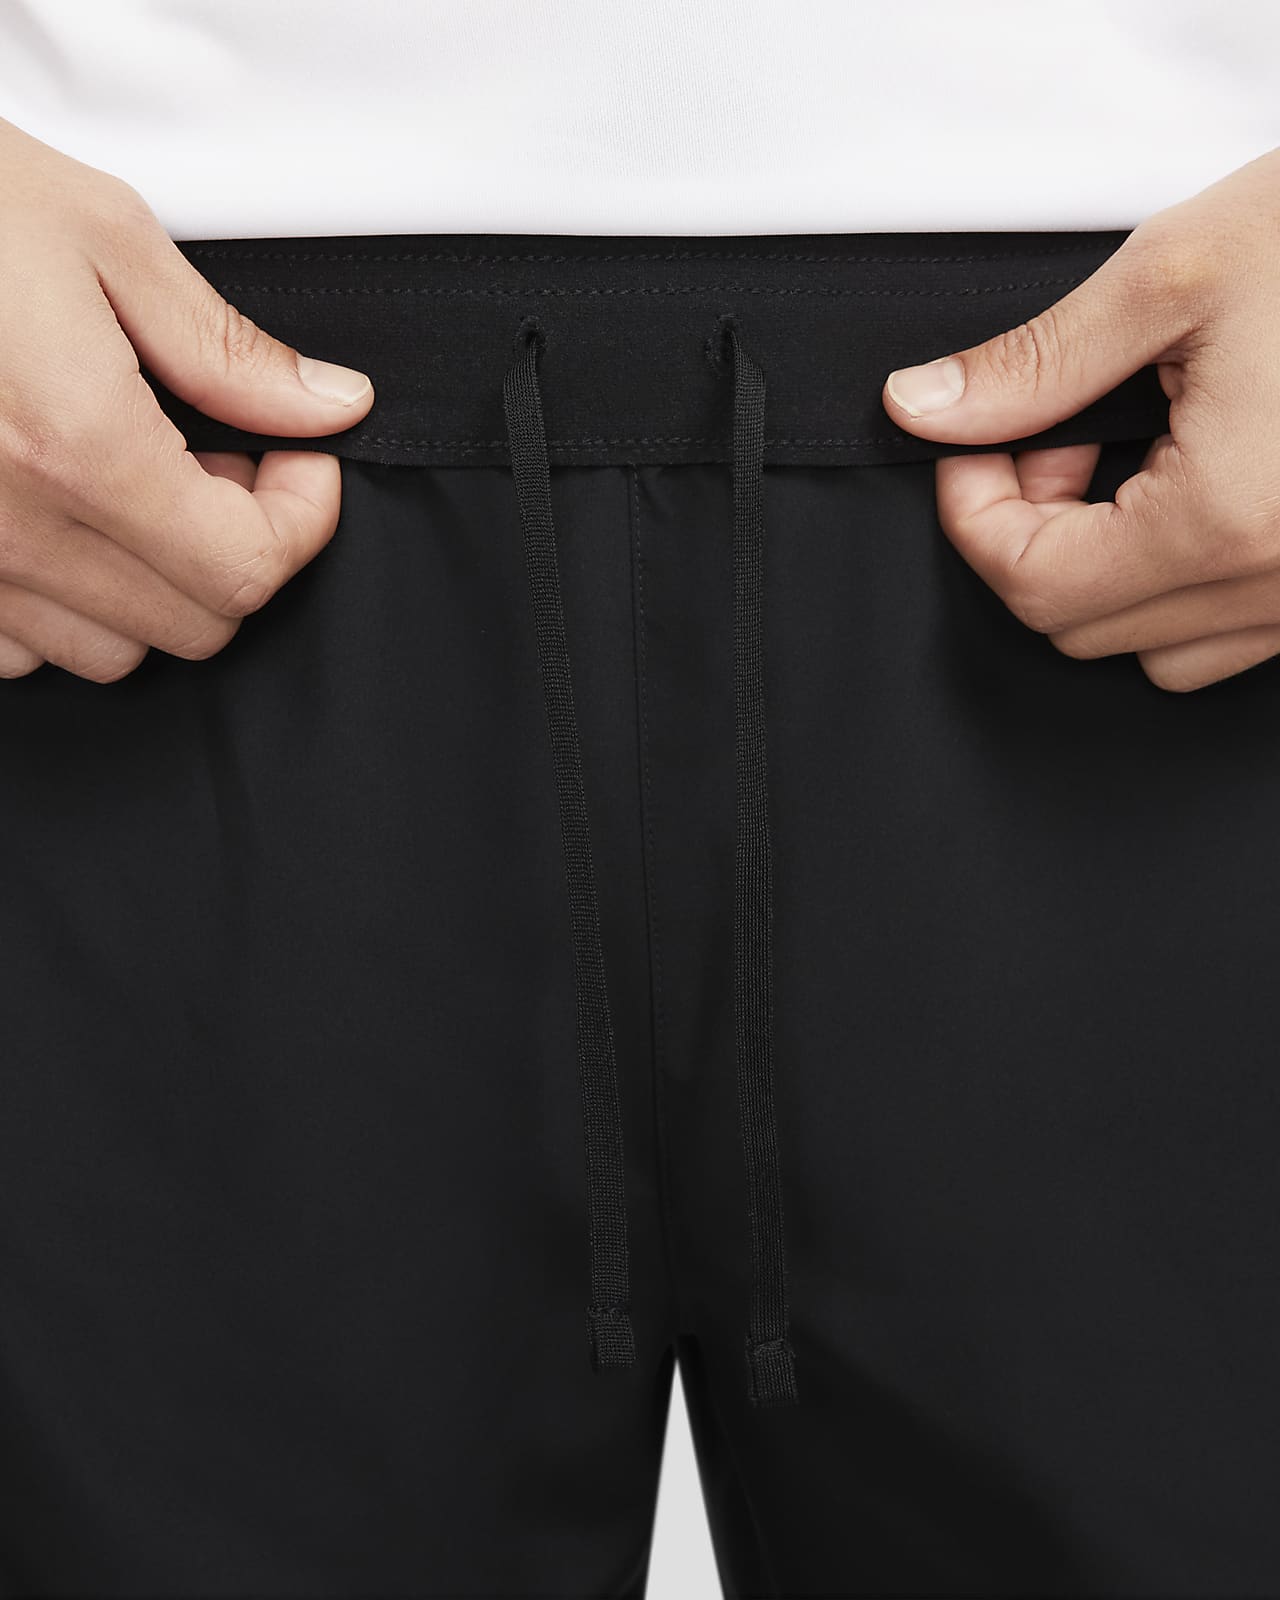 Nike Dri-FIT Challenger Men's 18cm (approx.) Unlined Versatile Shorts ...